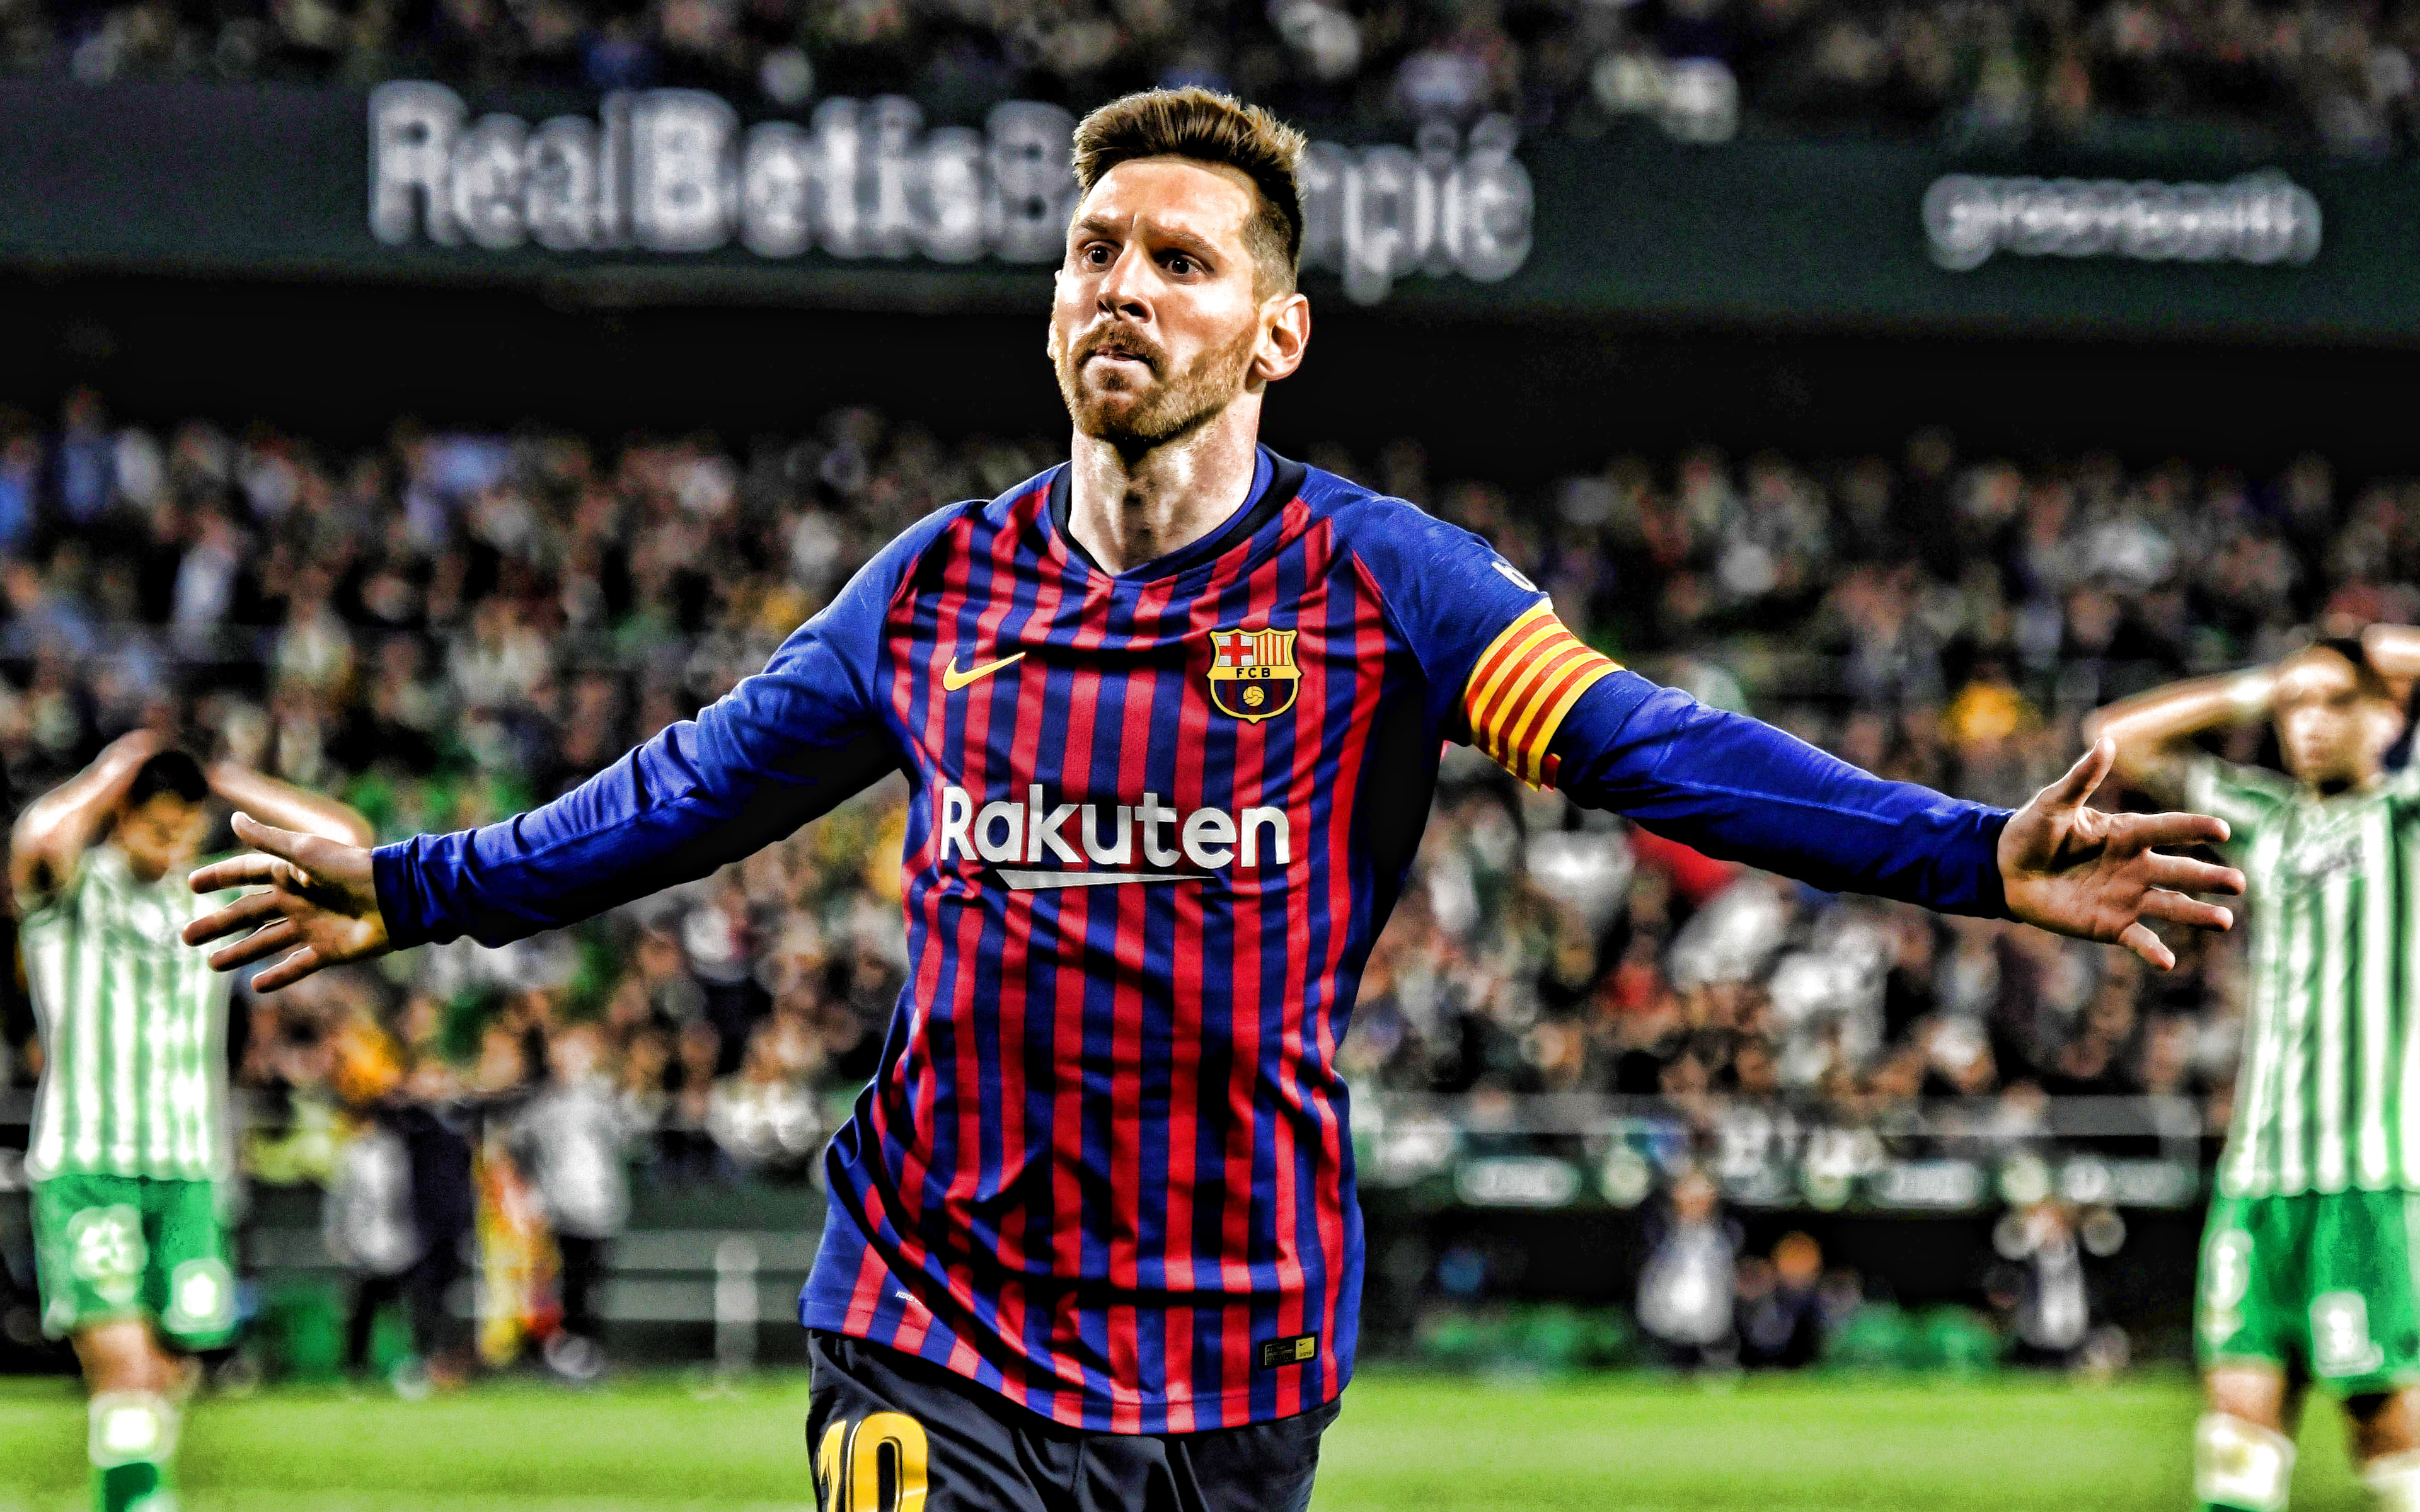 Nhanh tay thưởng thức sự đẳng cấp và nghệ thuật của Ronaldo khi xem trước hình nền Messi Barcelona chất lượng cao năm